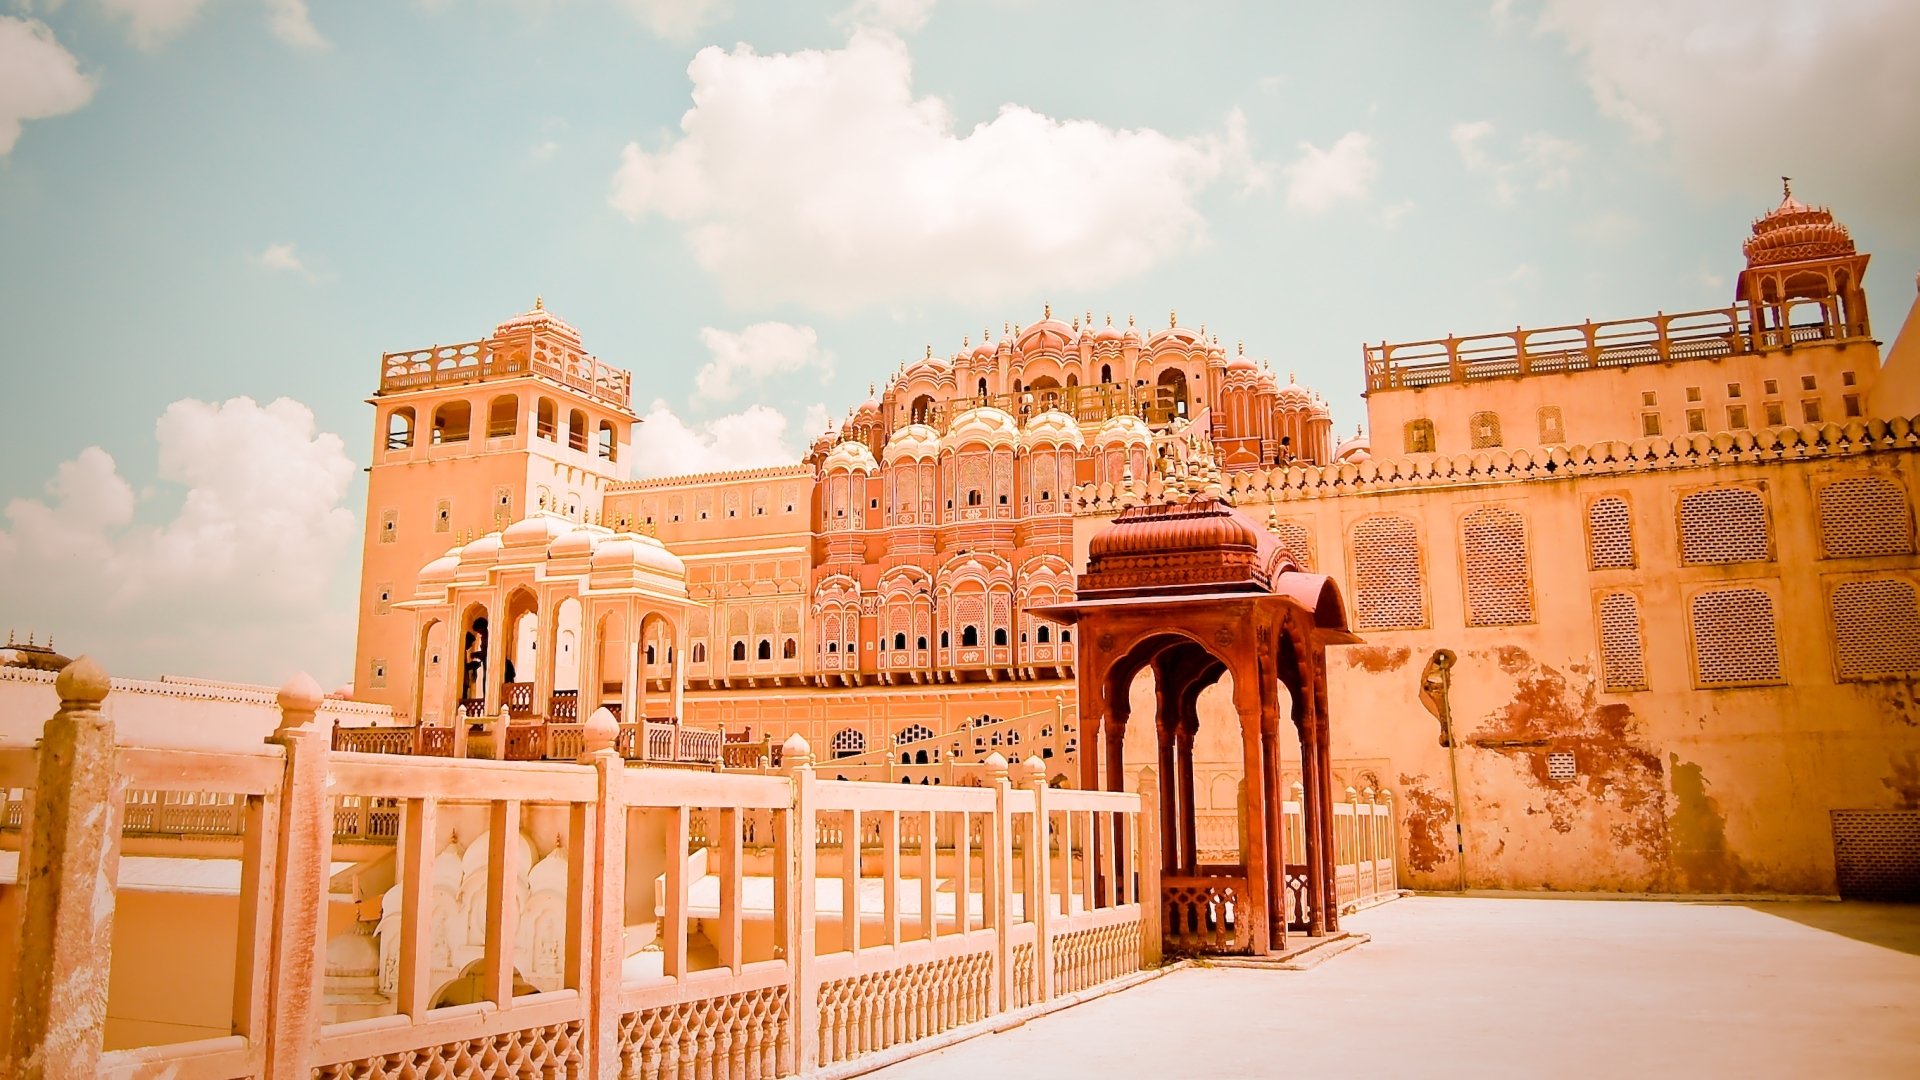 Jaipur - Royal City - Indian Tourister